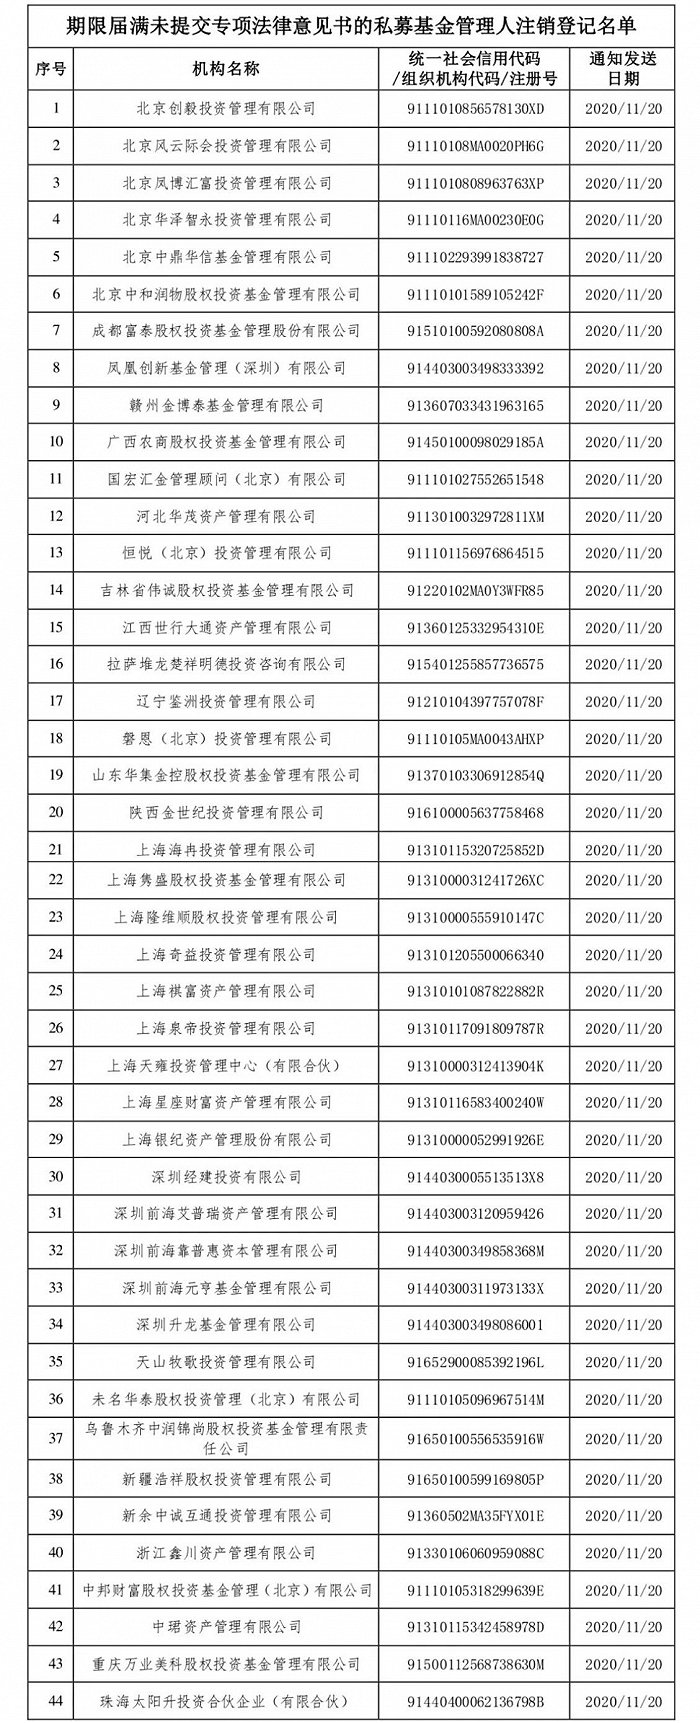 中基协：注销北京创毅投资管理有限公司等44家机构的私募基金管理人登记